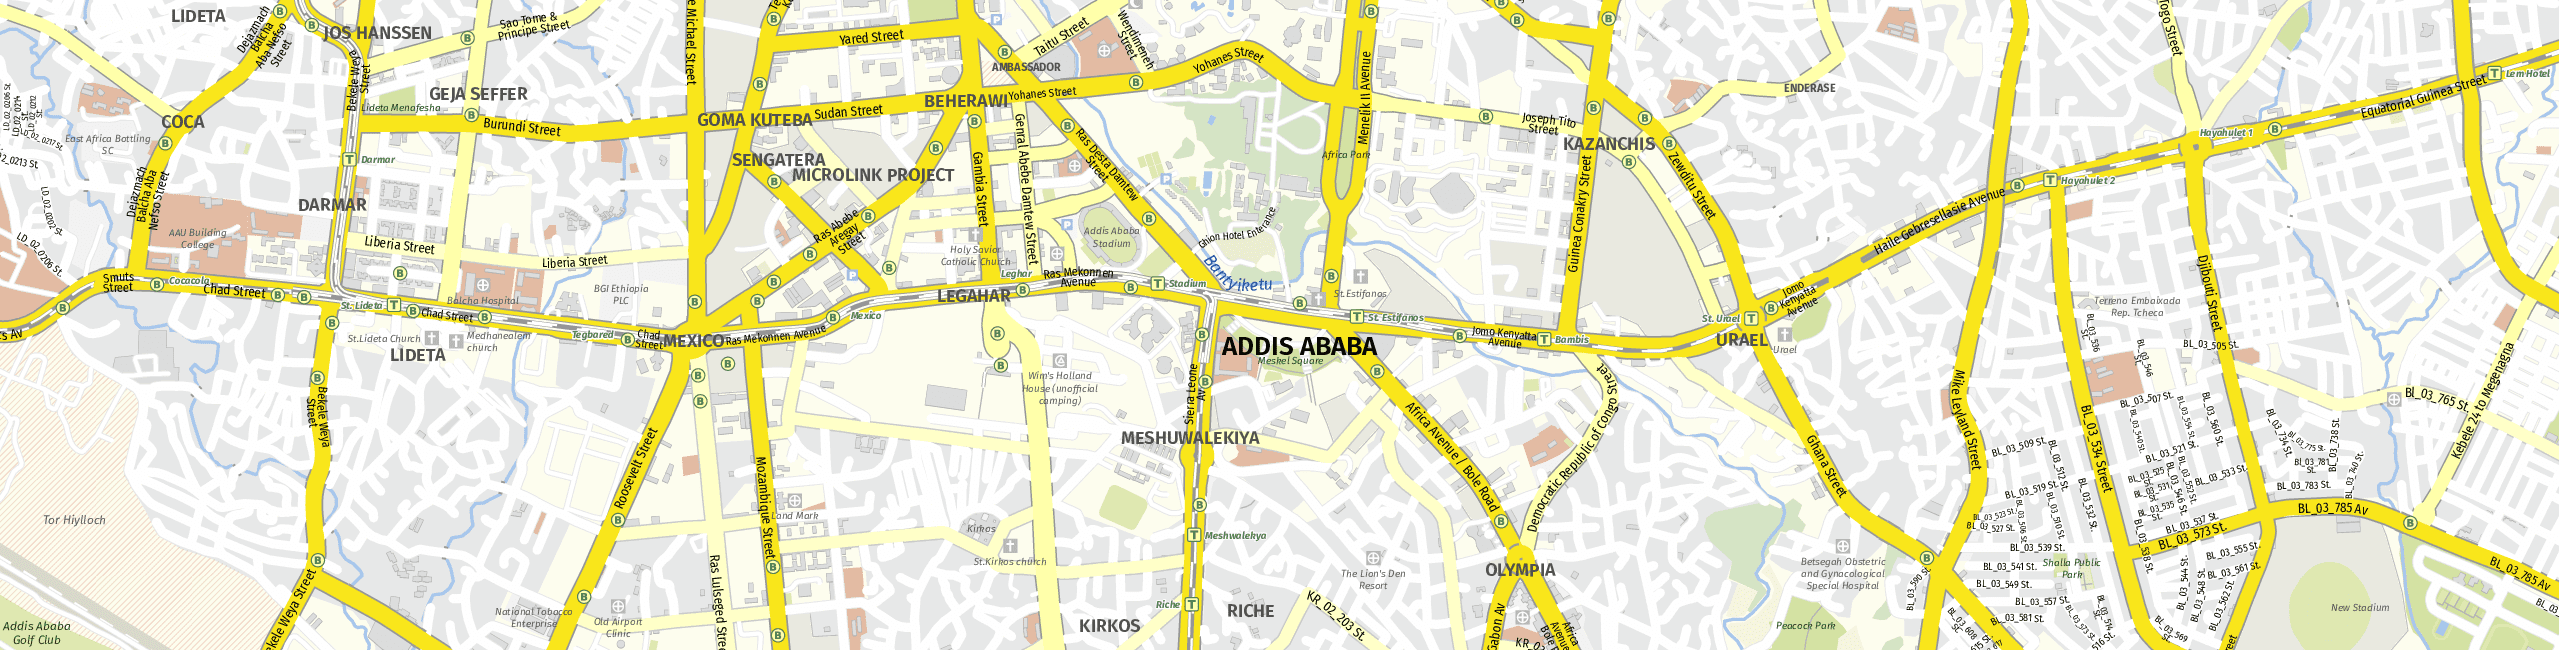 Stadtplan Addis Abeba zum Downloaden.